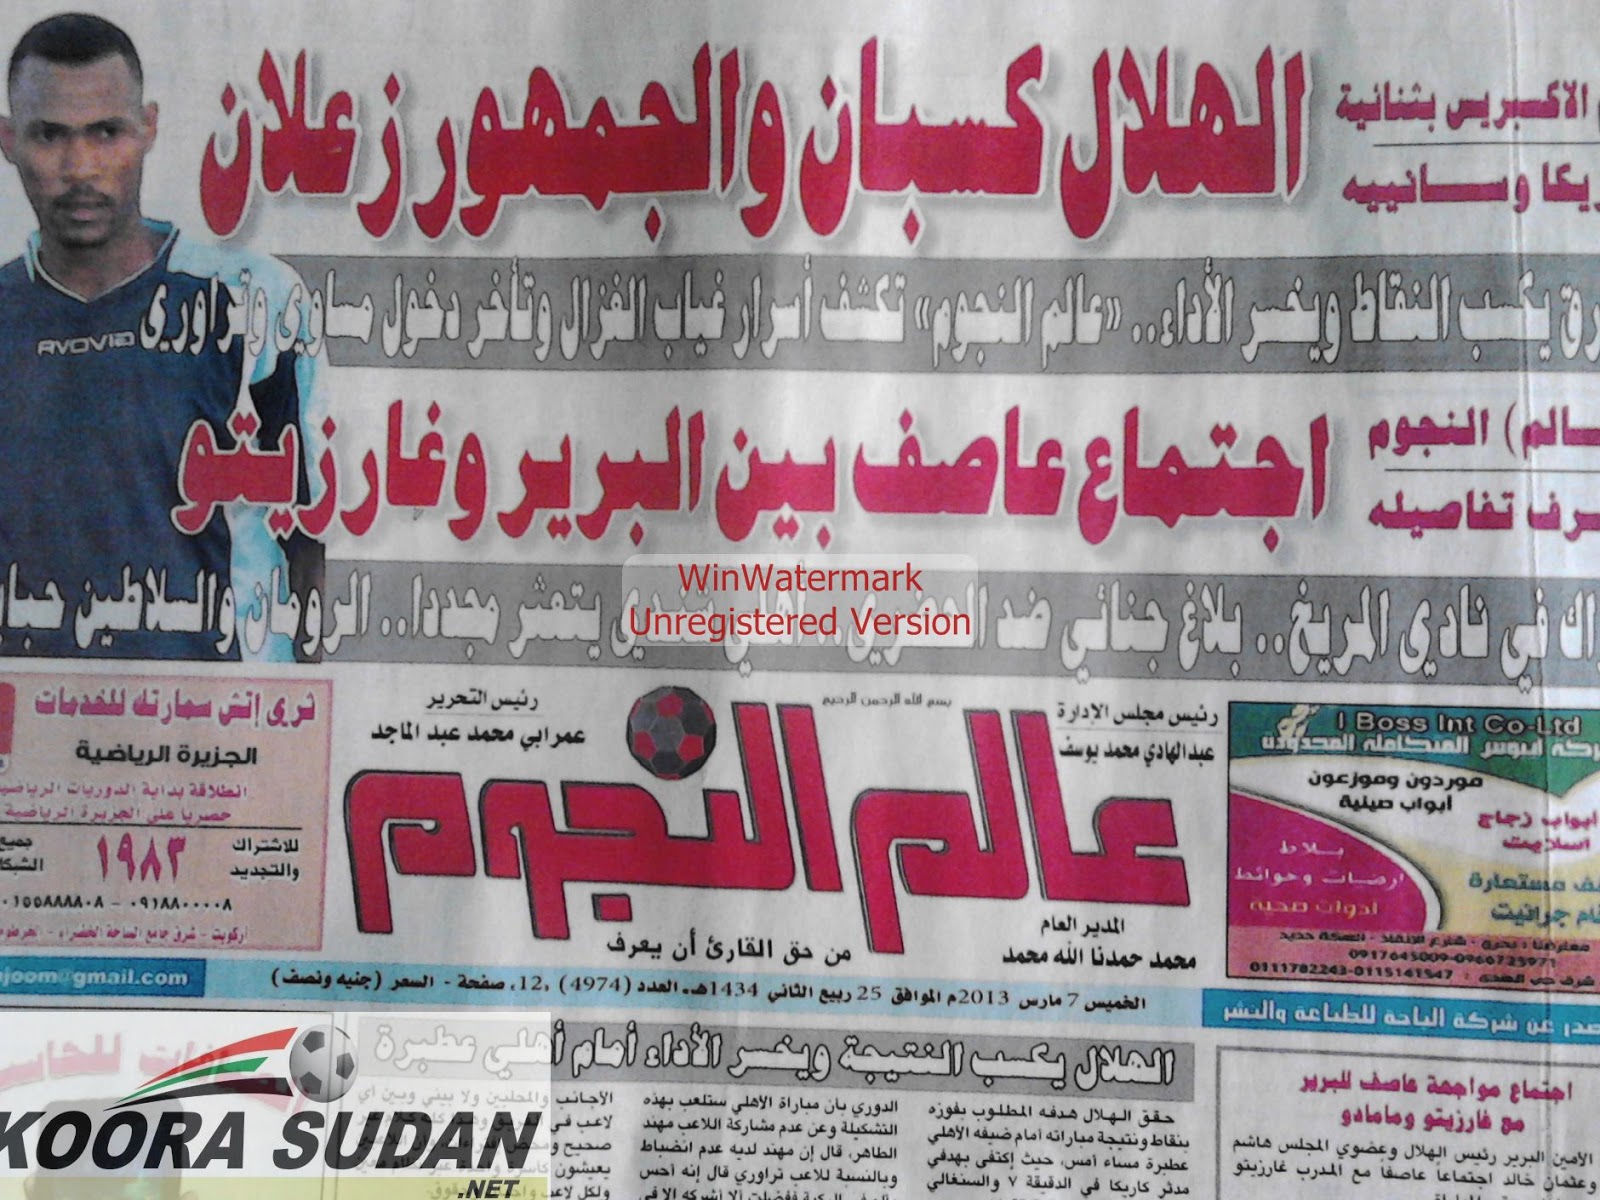 الصحف الرياضية السودانية